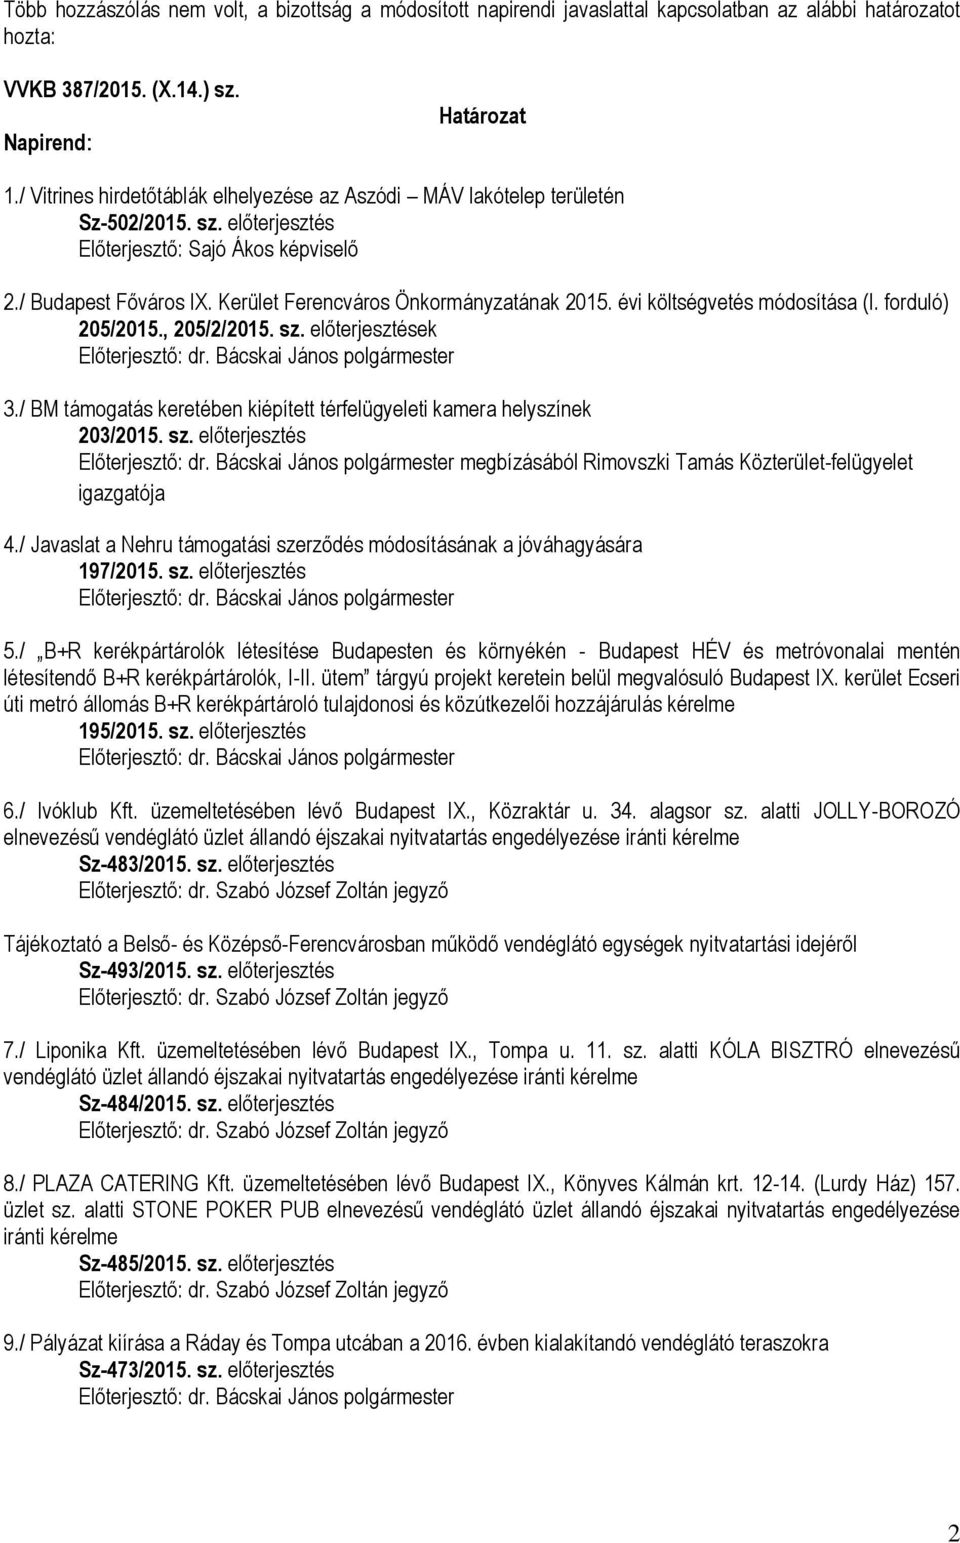 Kerület Ferencváros Önkormányzatának 2015. évi költségvetés módosítása (I. forduló) 205/2015., 205/2/2015. sz. előterjesztések 3.